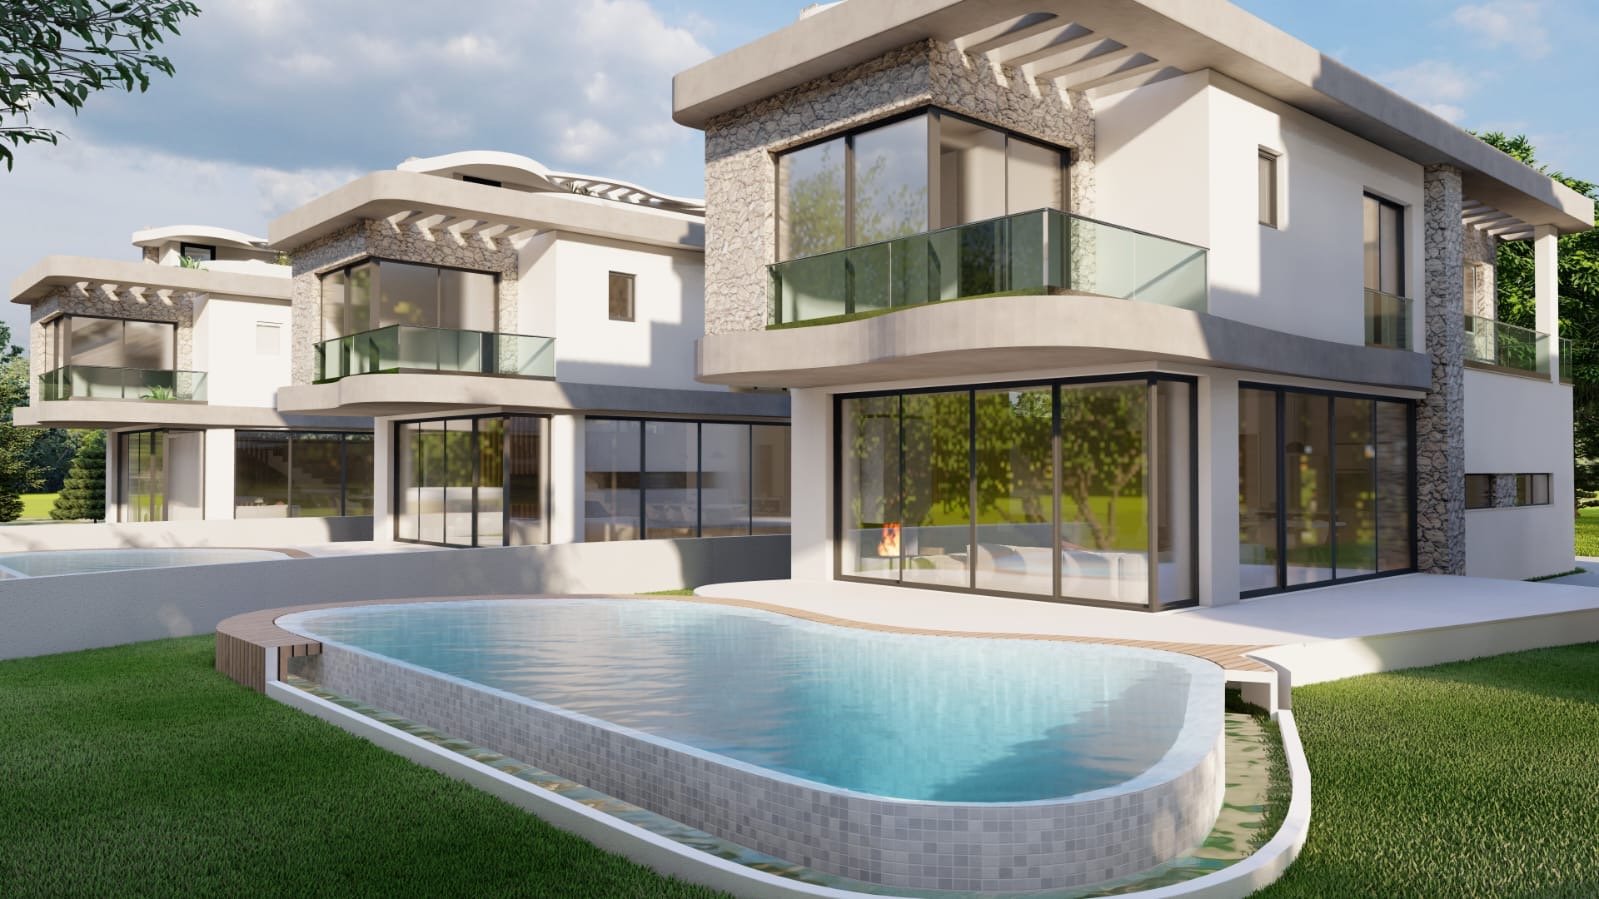 Sizi Girne Laptanın Yeni Gözde Projesi İle Buluşturuyoruyz! 4+1 Havuzlu Lüks Villalar £495.000